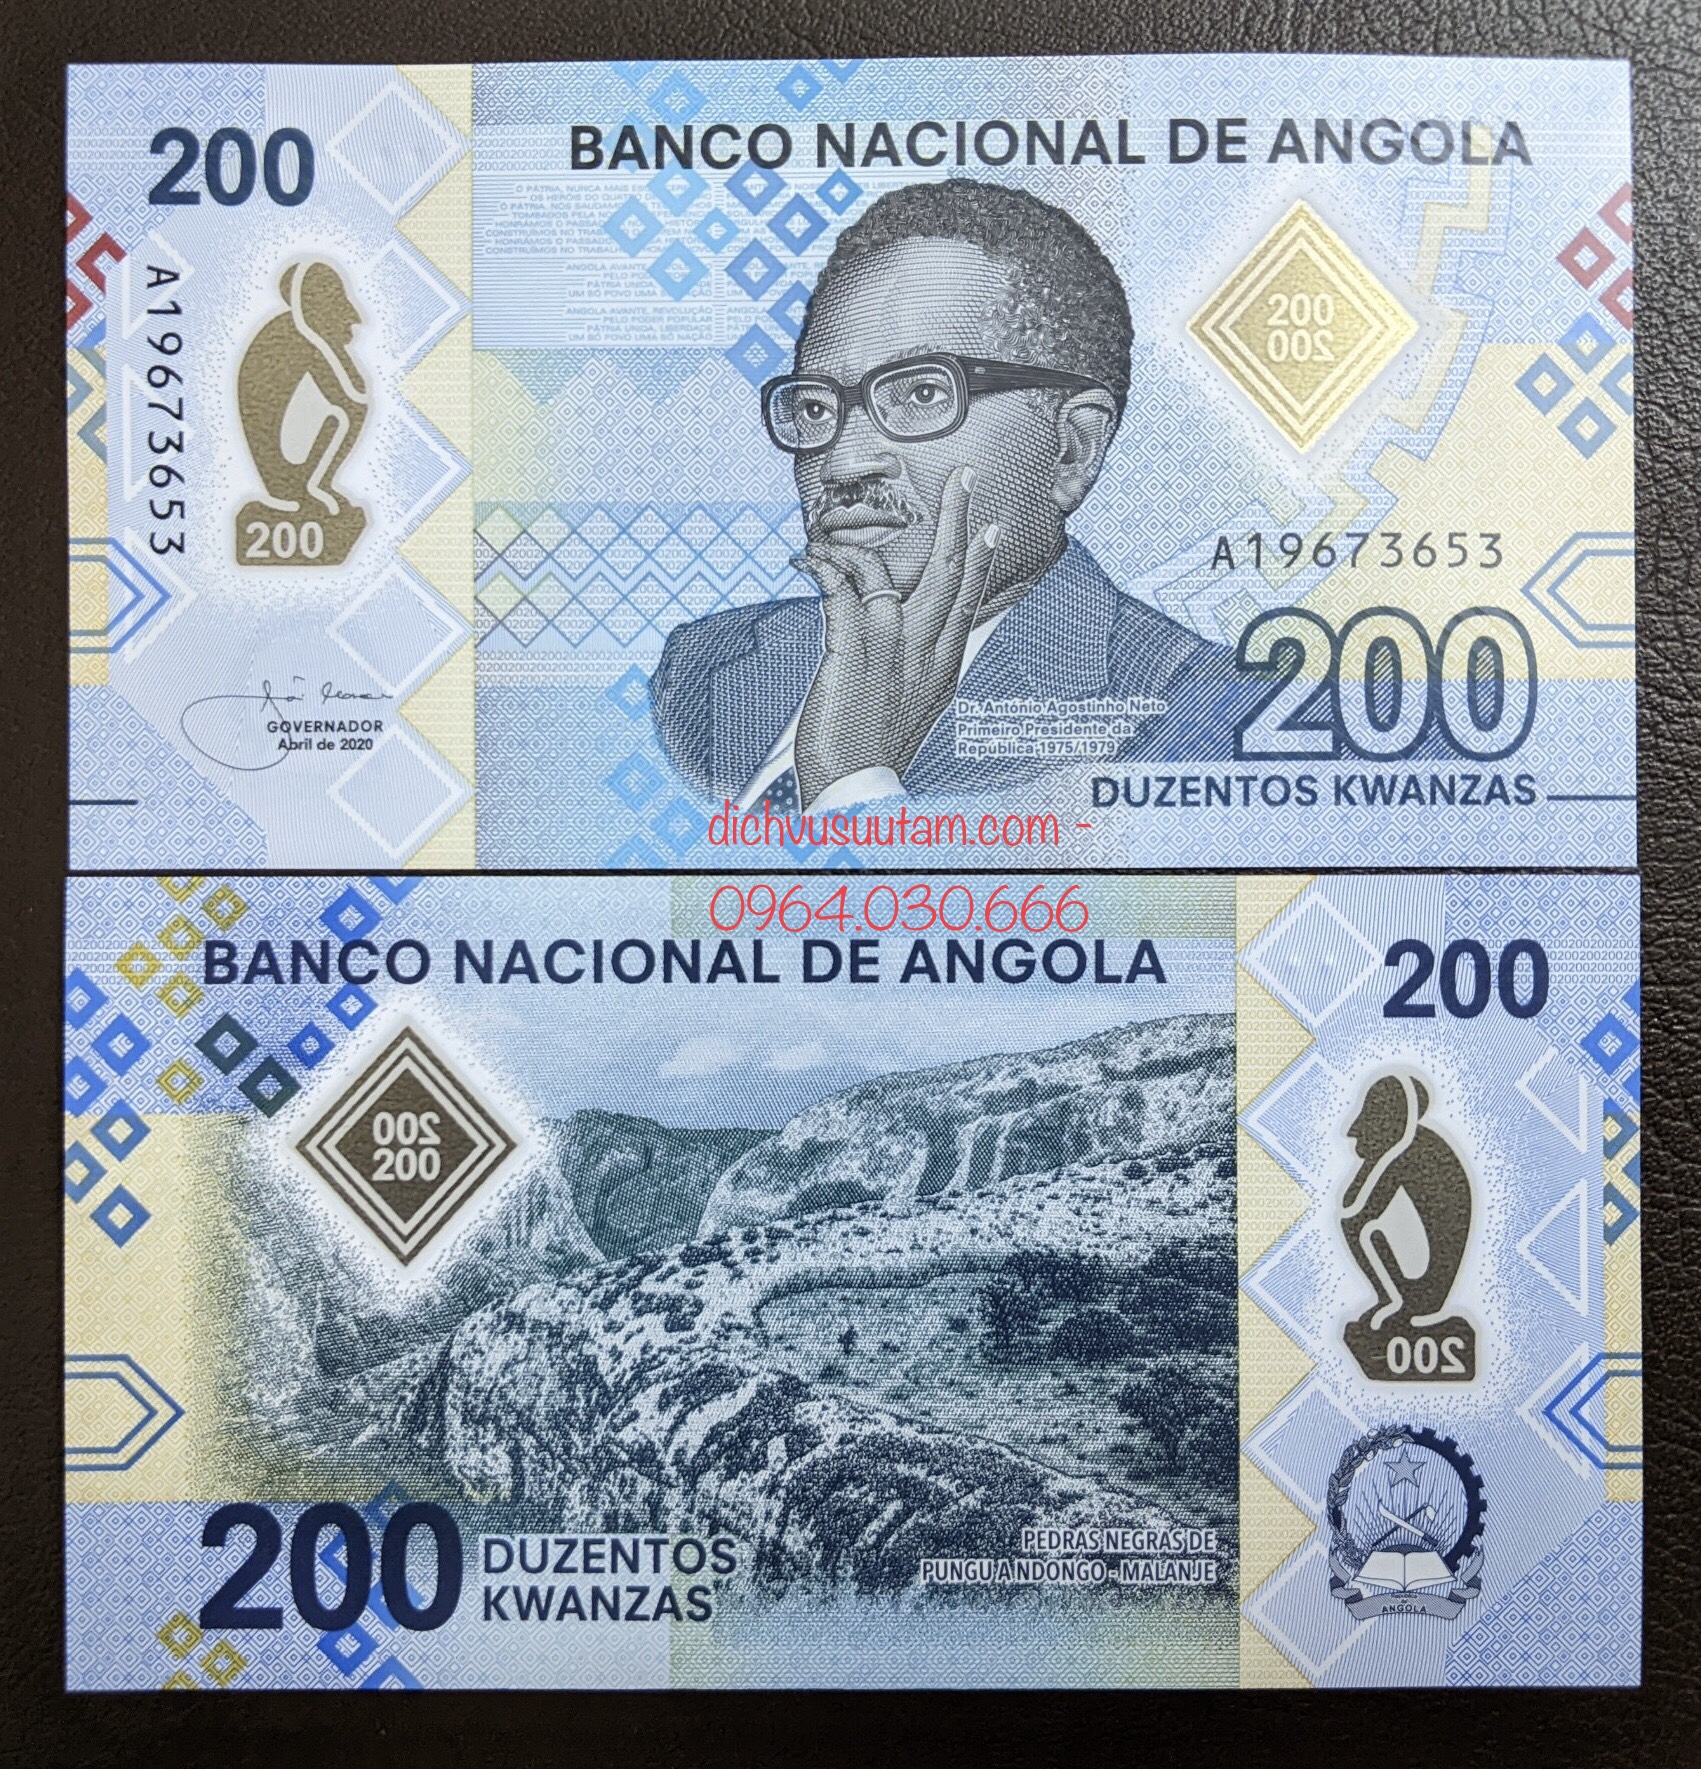 Tiền Cộng hòa Angola 200 kwanzas polymer mới cứng sưu tầm